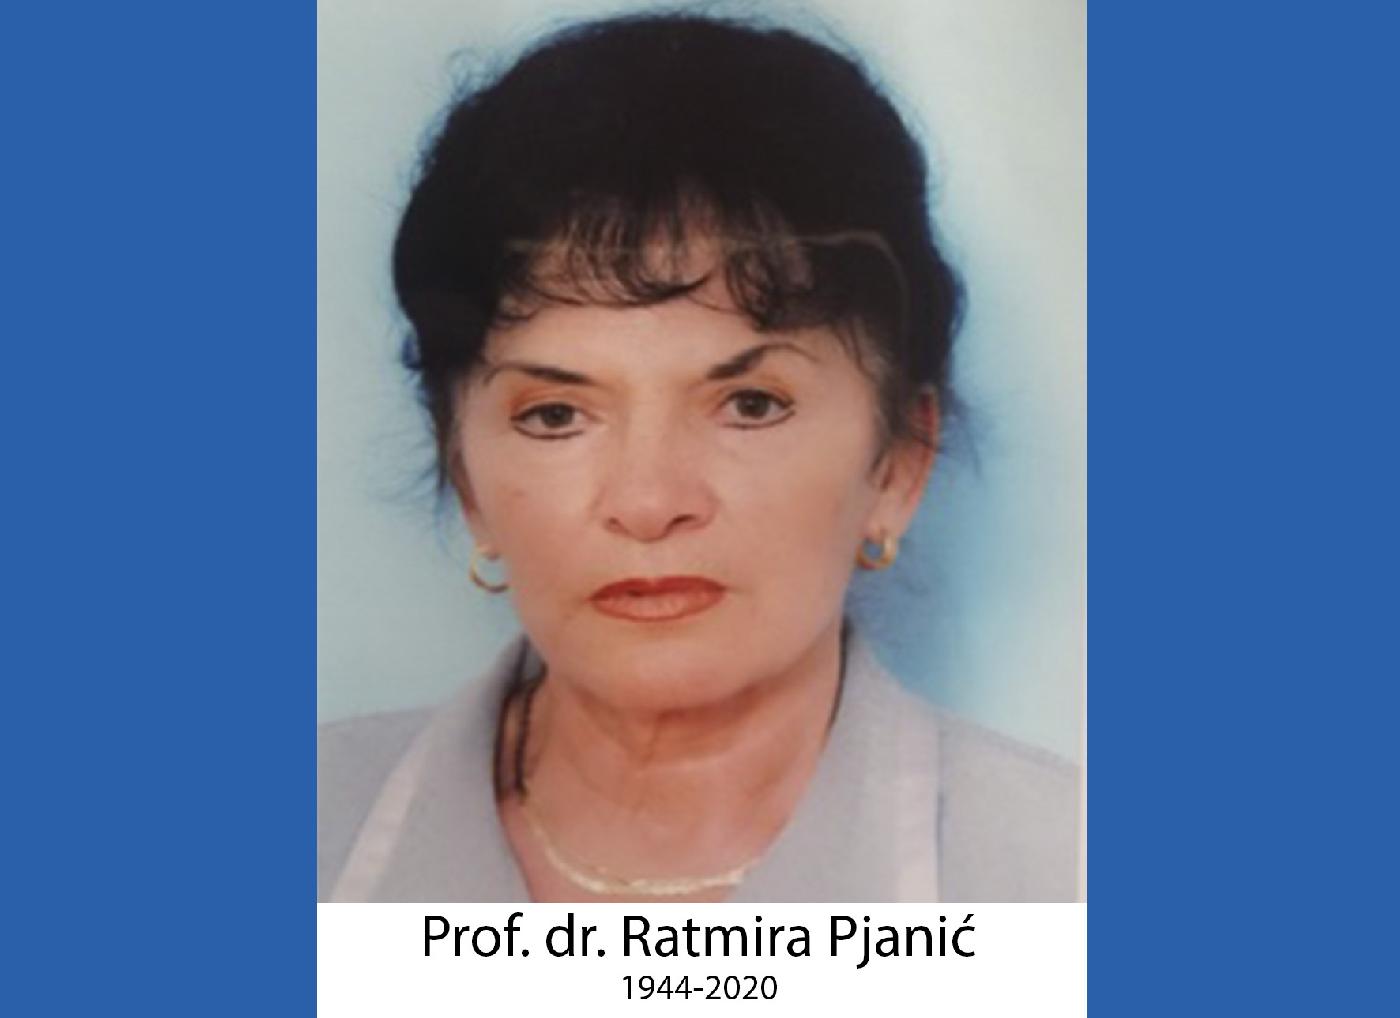 Nekrolog profesorici Ratmiri Pjanić – nekrolog učiteljici života